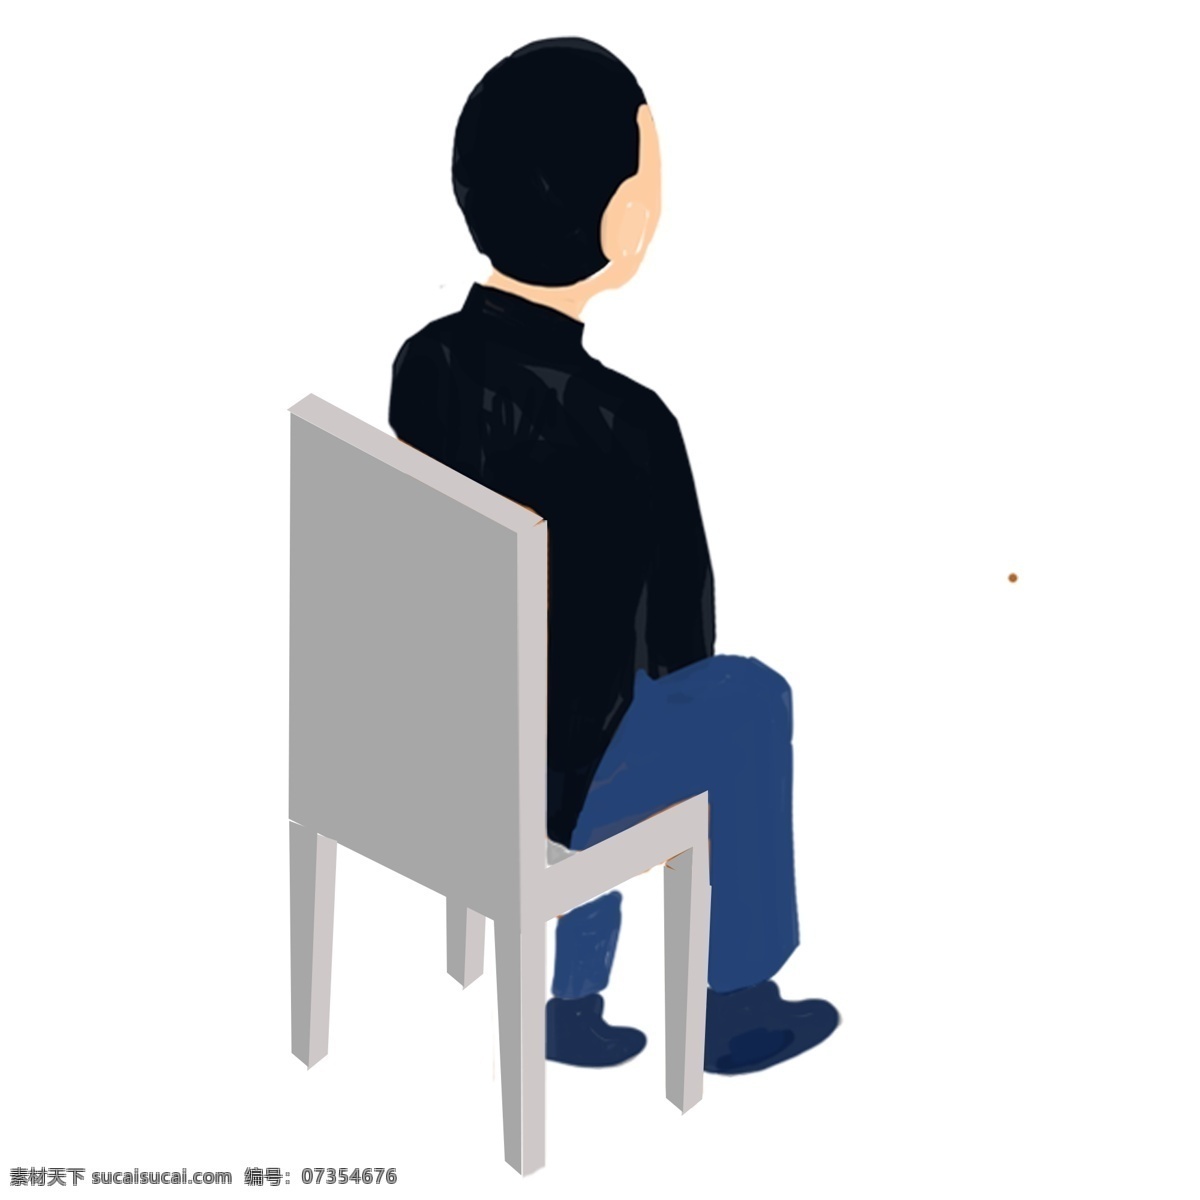 一个 背对 坐在 椅子 上 男人 免 抠 图 免抠图 扁平化人物 穿 黑色 衣服